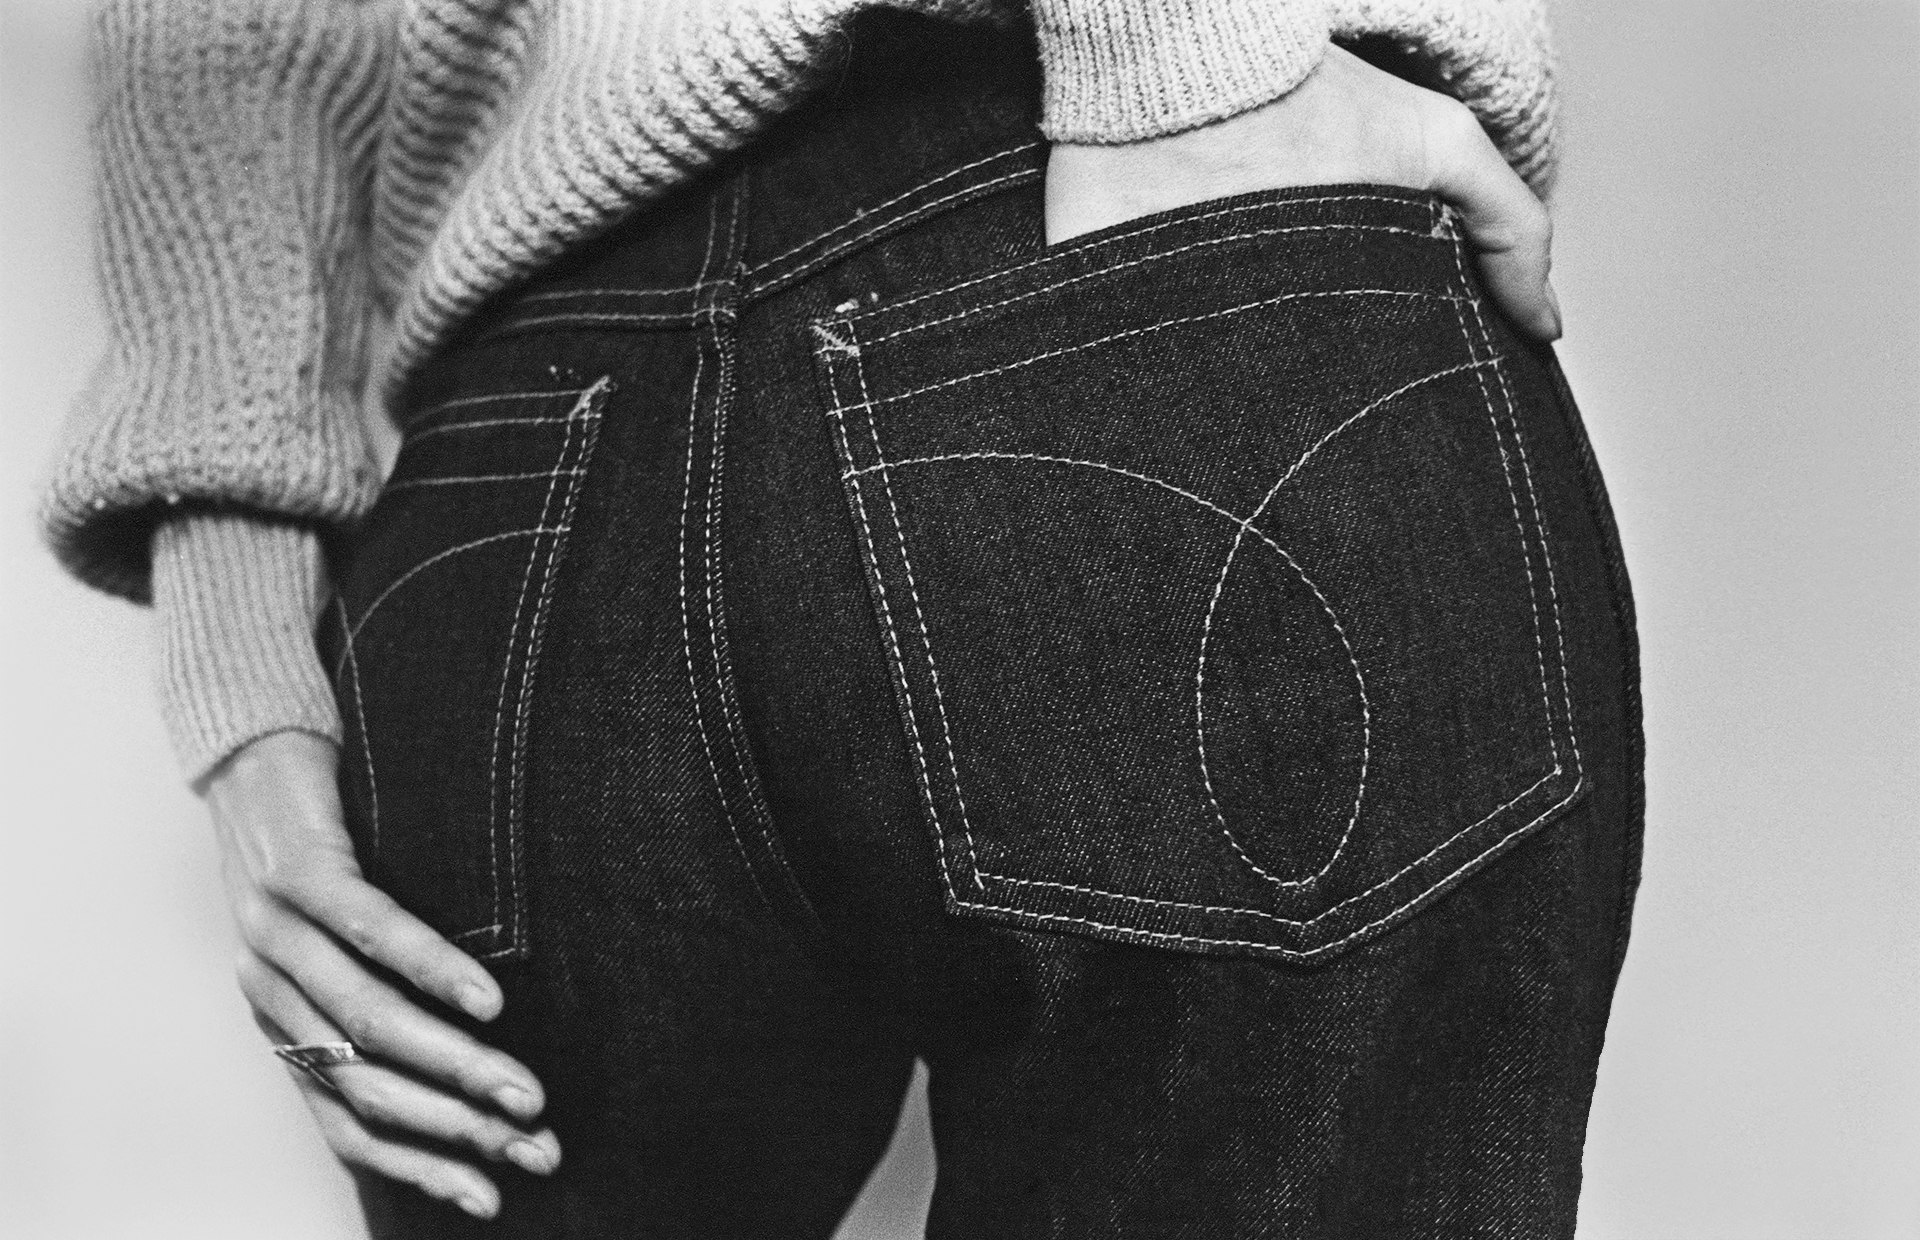 Стройные девушки в обтягивающих джинсах (38 фото) » Невседома